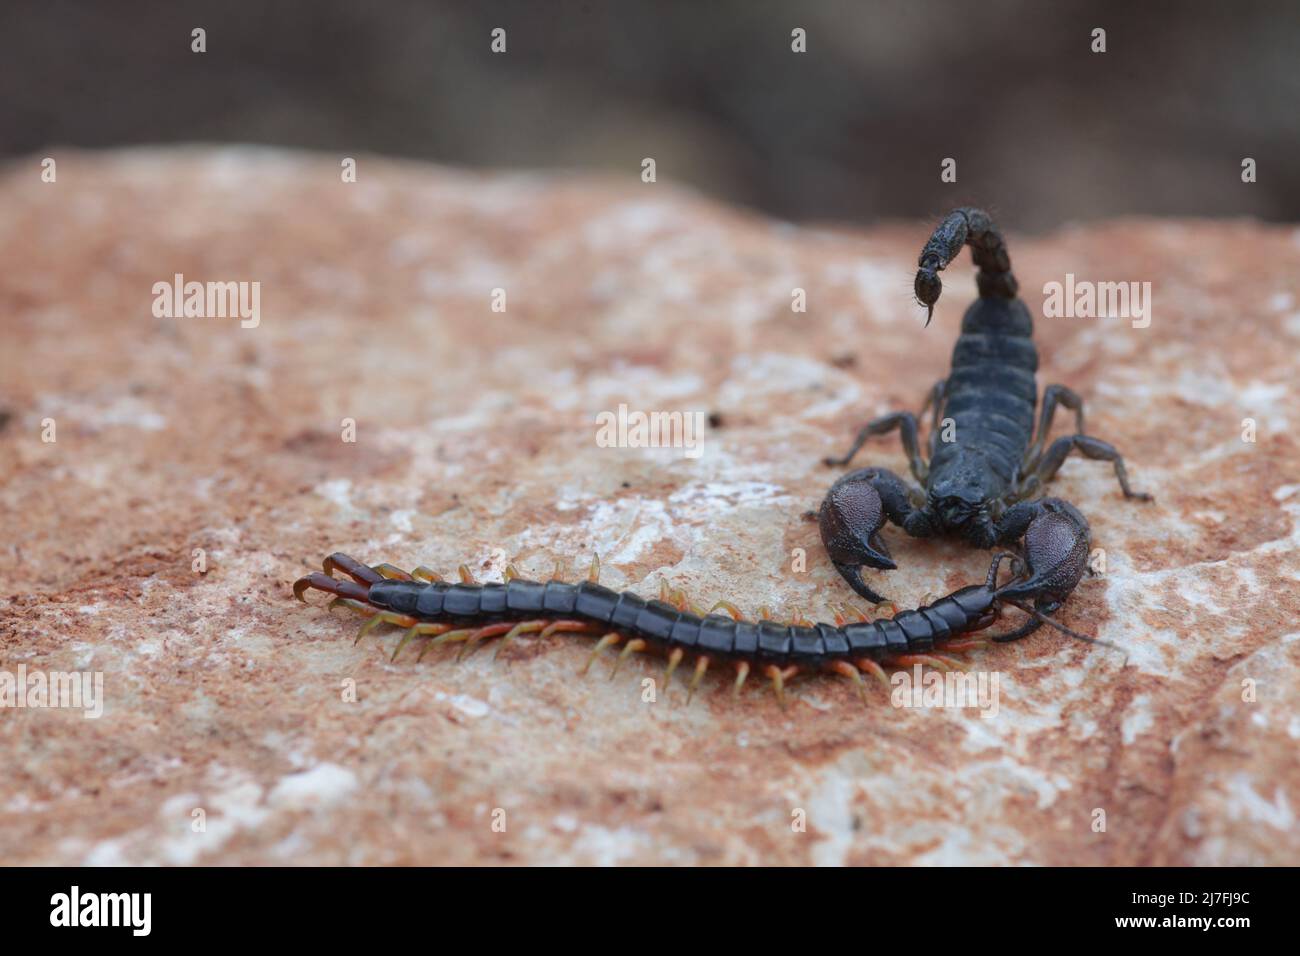 Israeliano scorpione nero (Scorpio maurus fuscus) mangia un Centipede fotografato in Israele Israele nel mese di ottobre Foto Stock